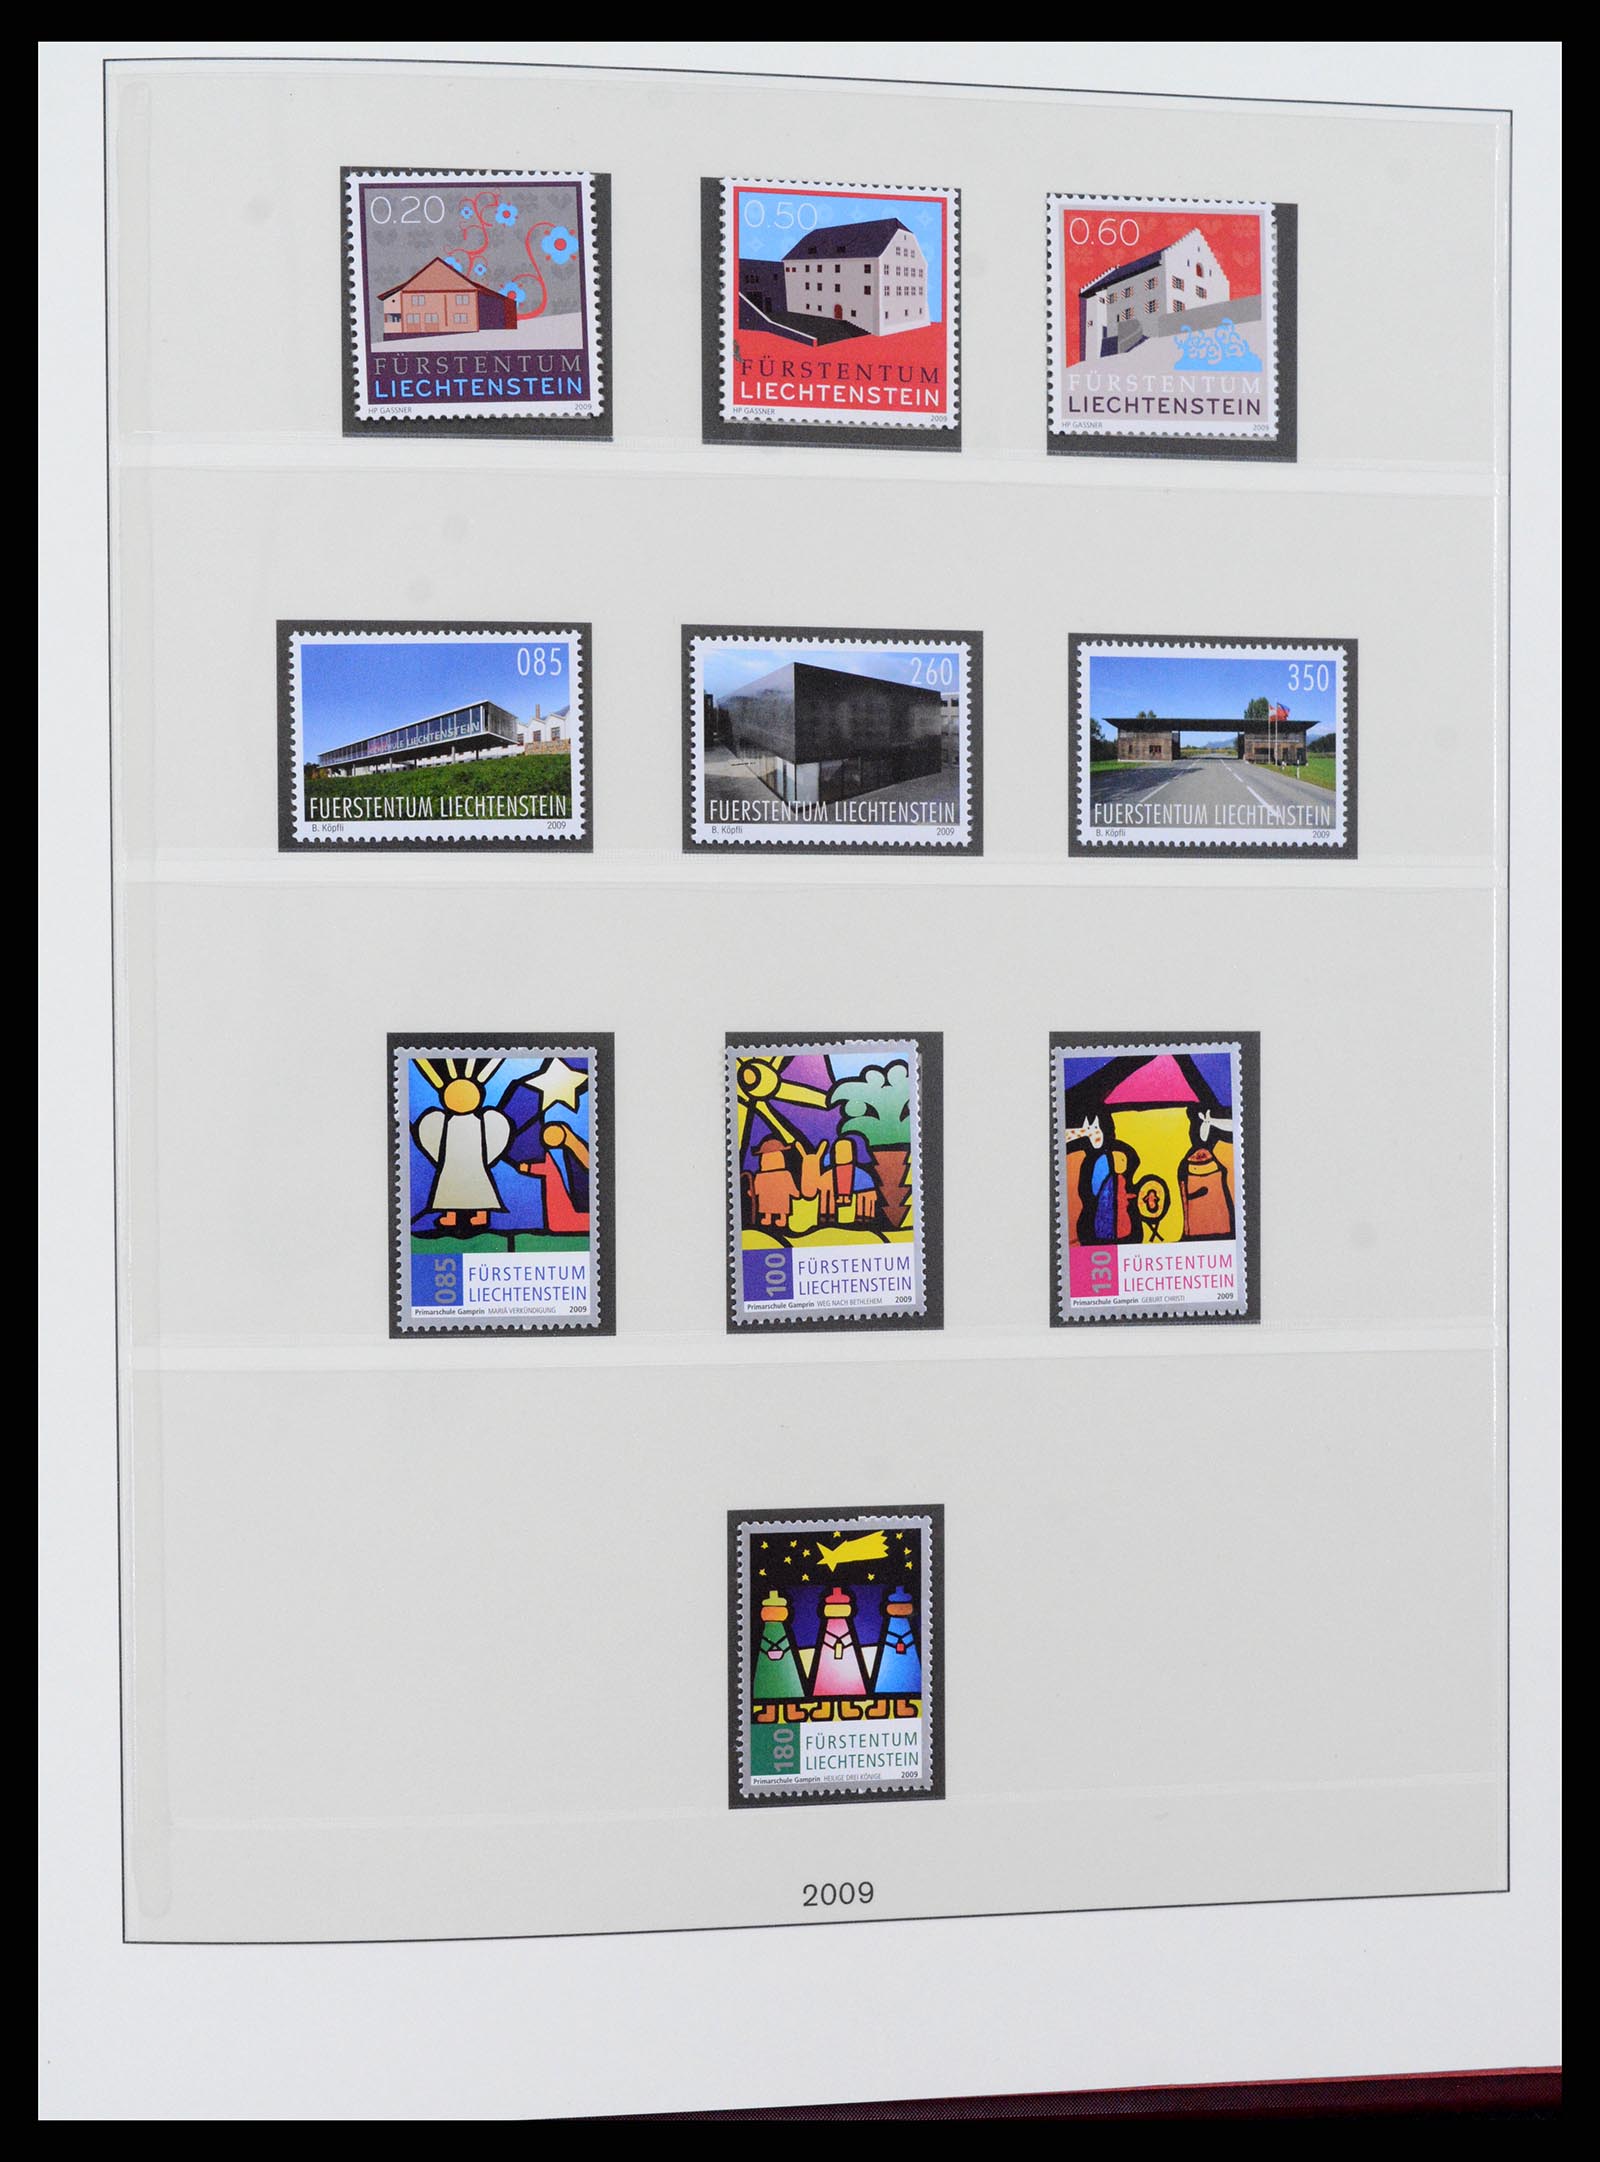 37295 153 - Stamp collection 37295 Liechtenstein 1912-2009.